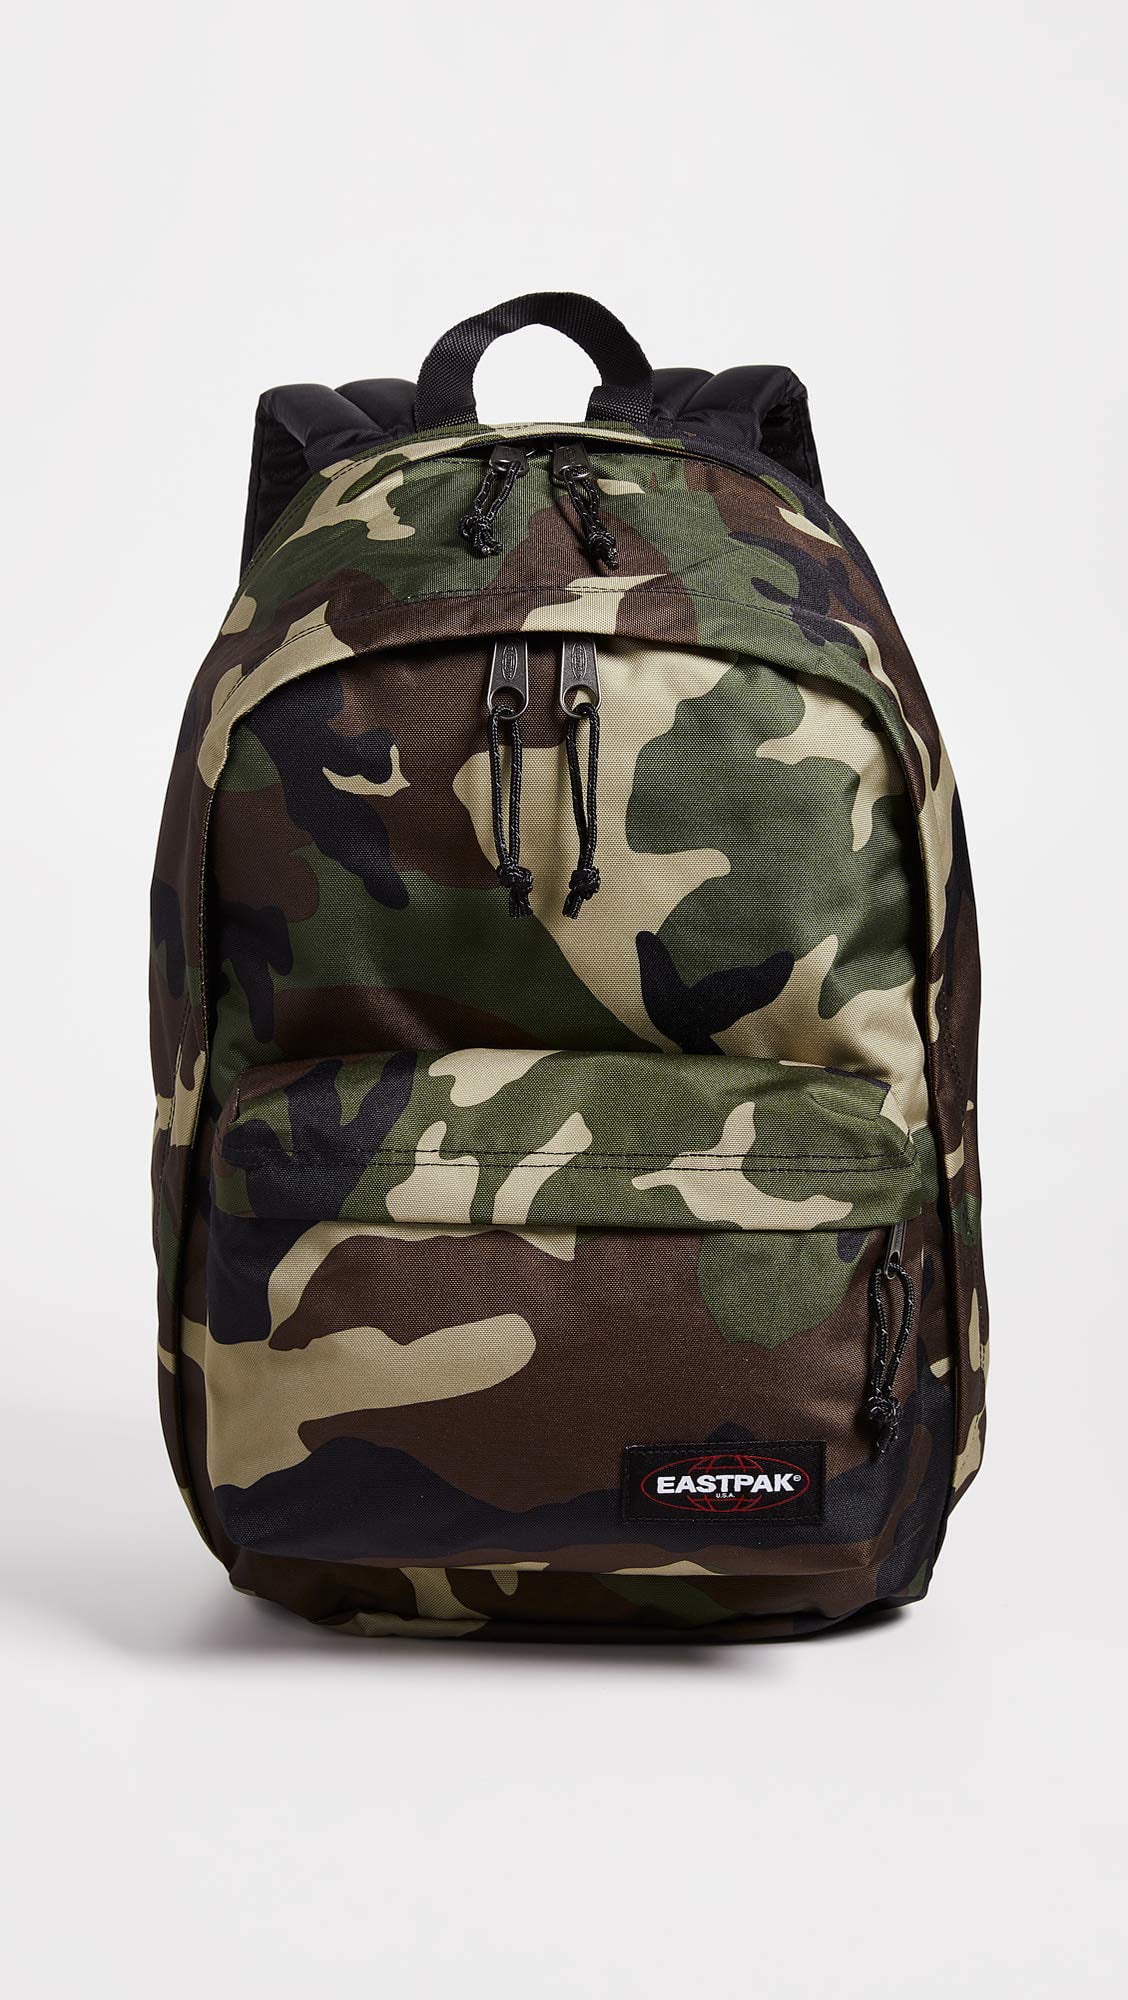 Eastpak Back To Backpack (Camo) Walmart.com